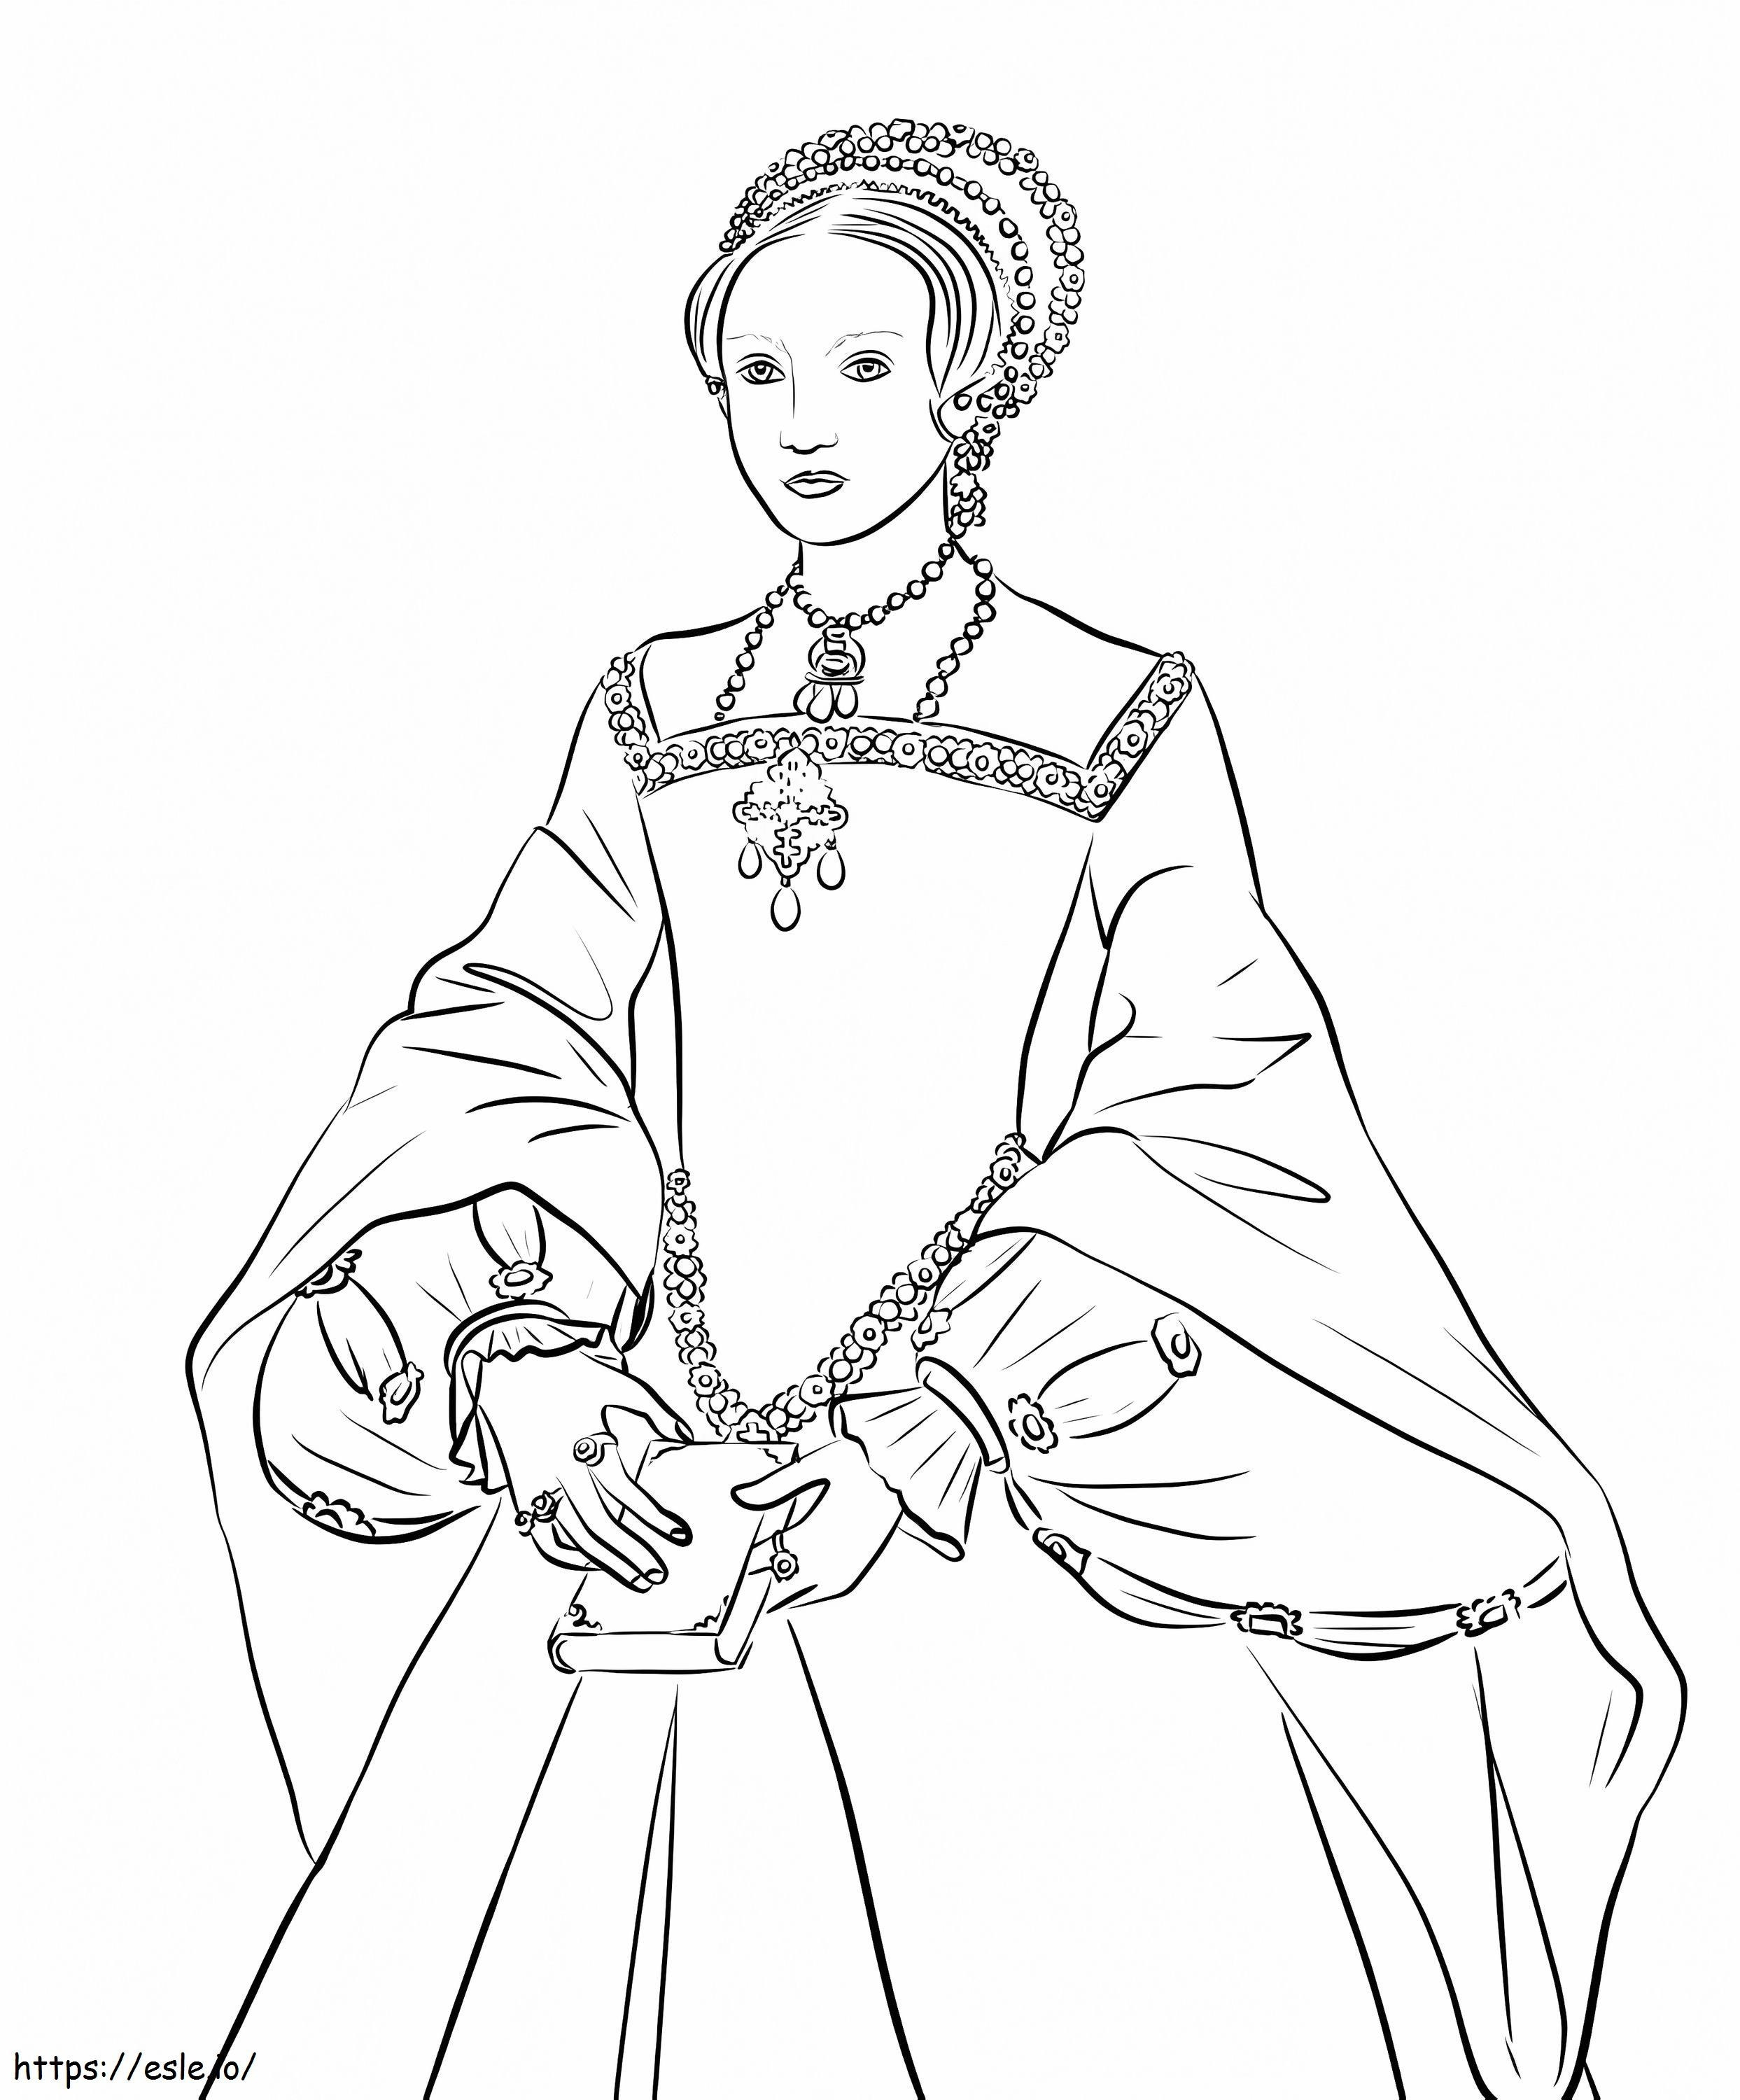 Queen Elizabeth I coloring page